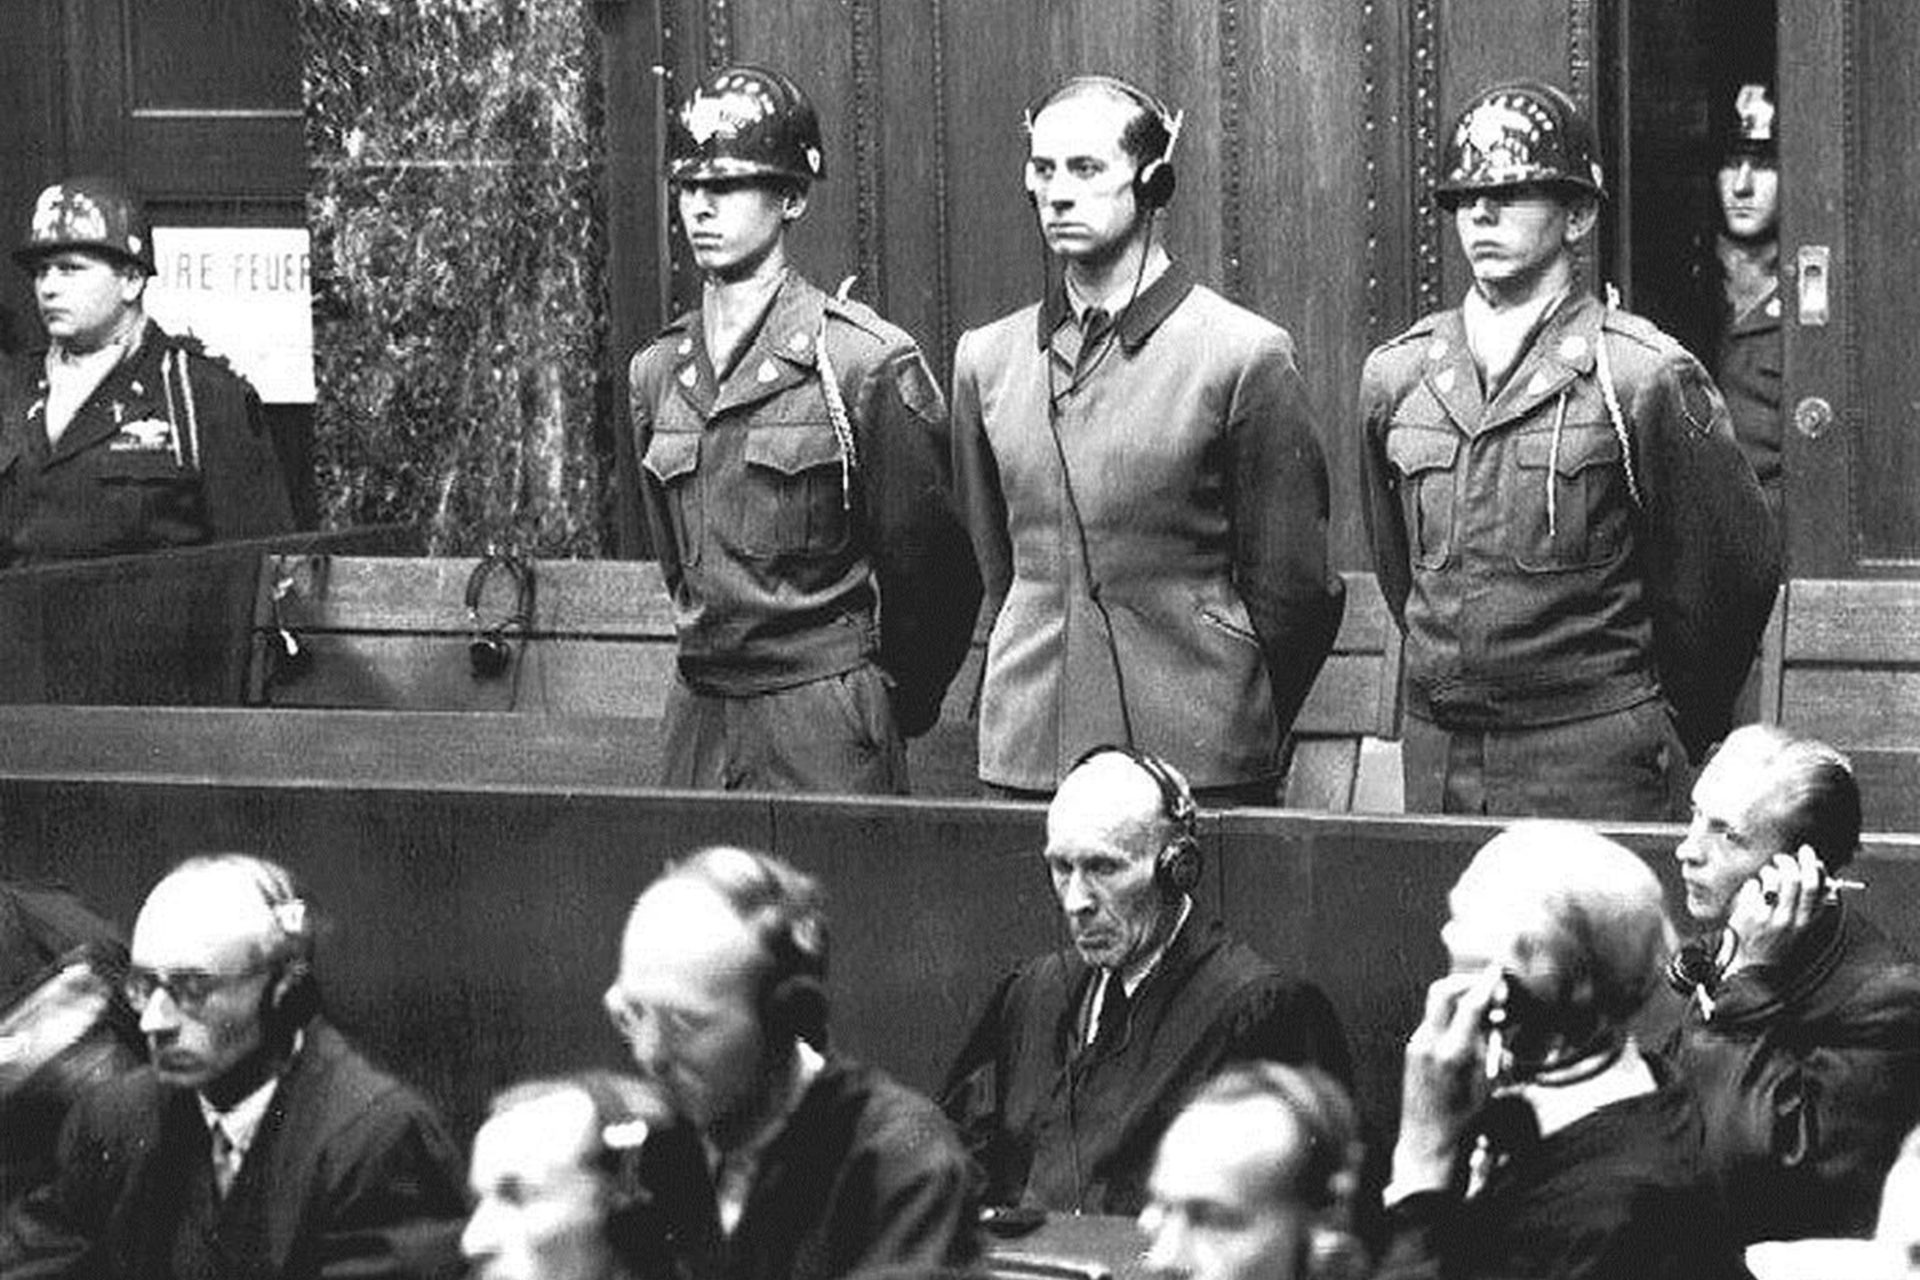 Nuremberg Doctors' Trial